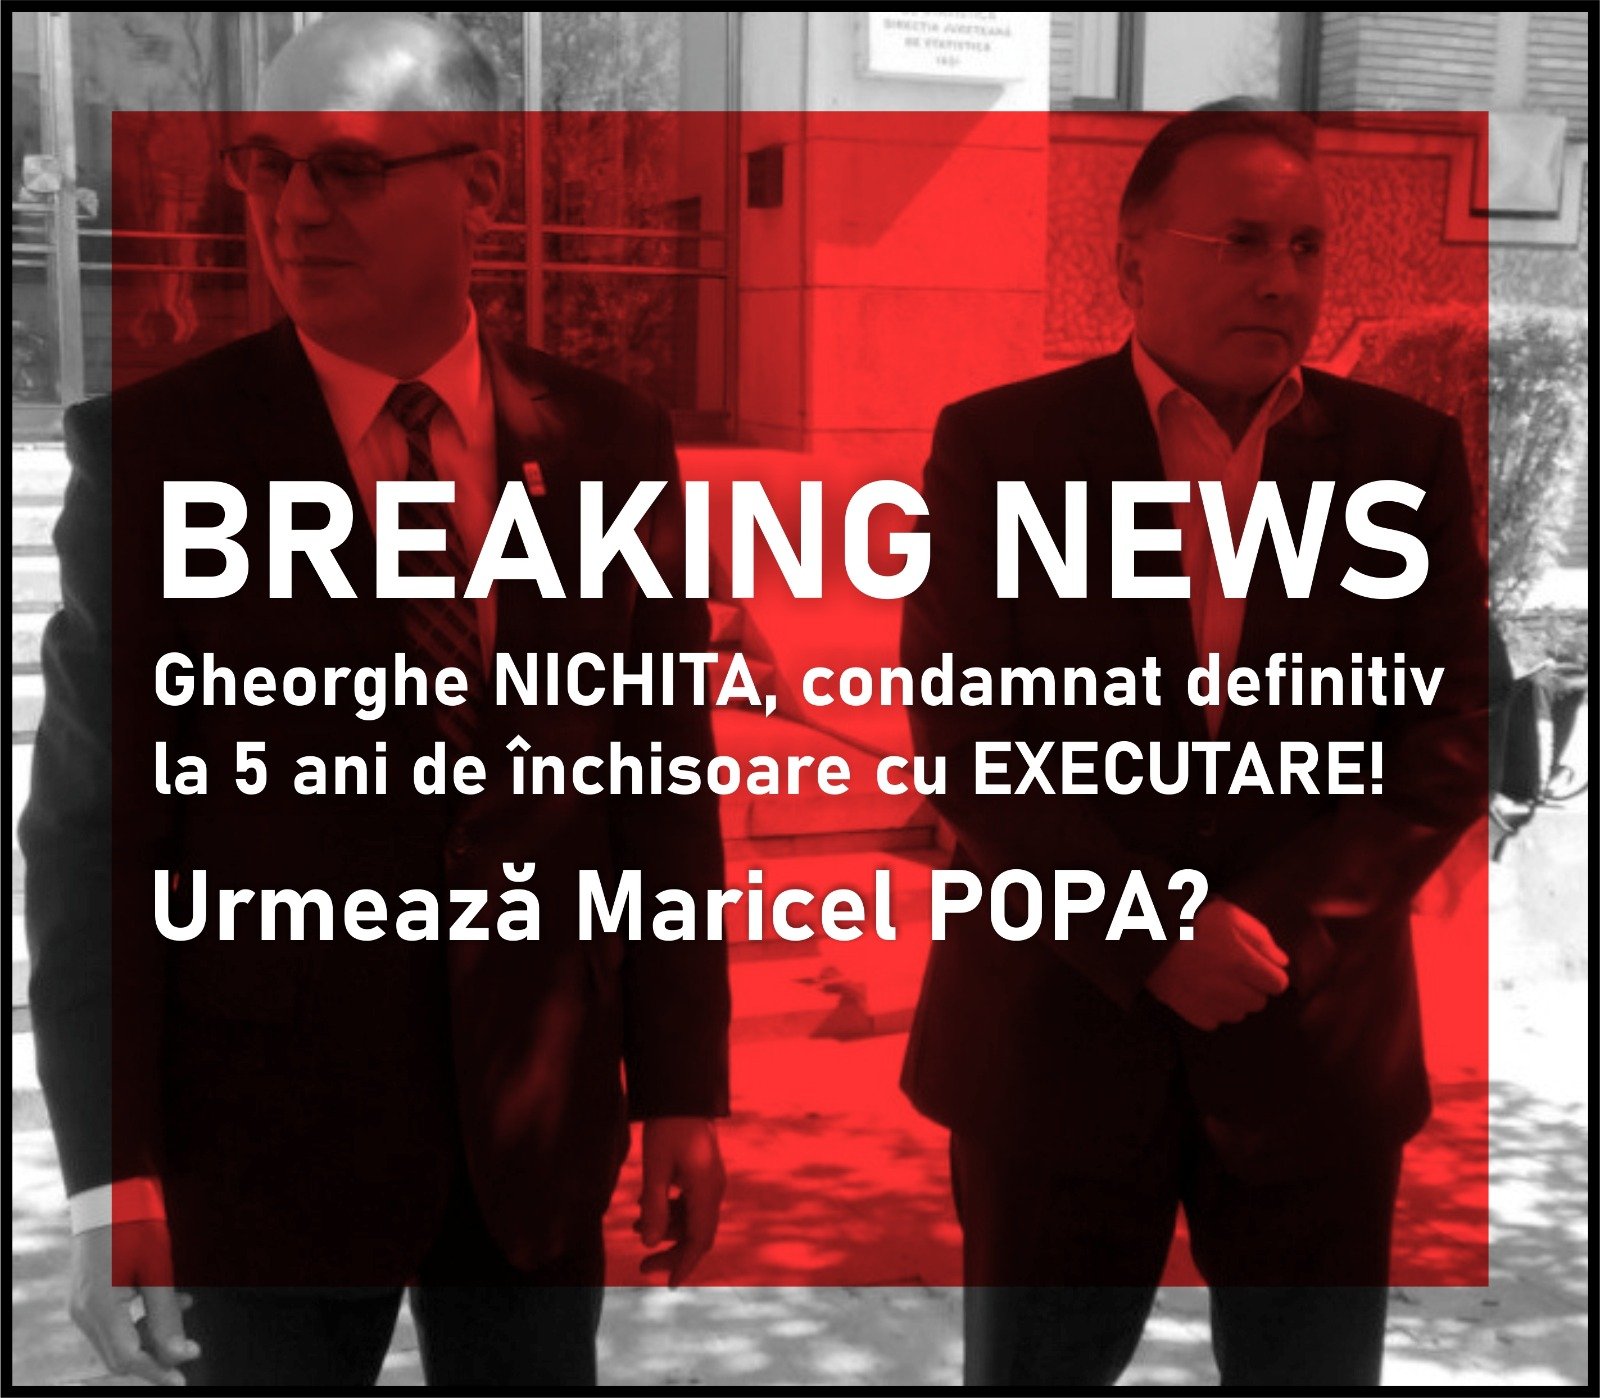  Condamnarea definitivă la închisoare a lui Gheorghe Nichita confirmă prăbușirea definitivă a PSD la Iași (P)